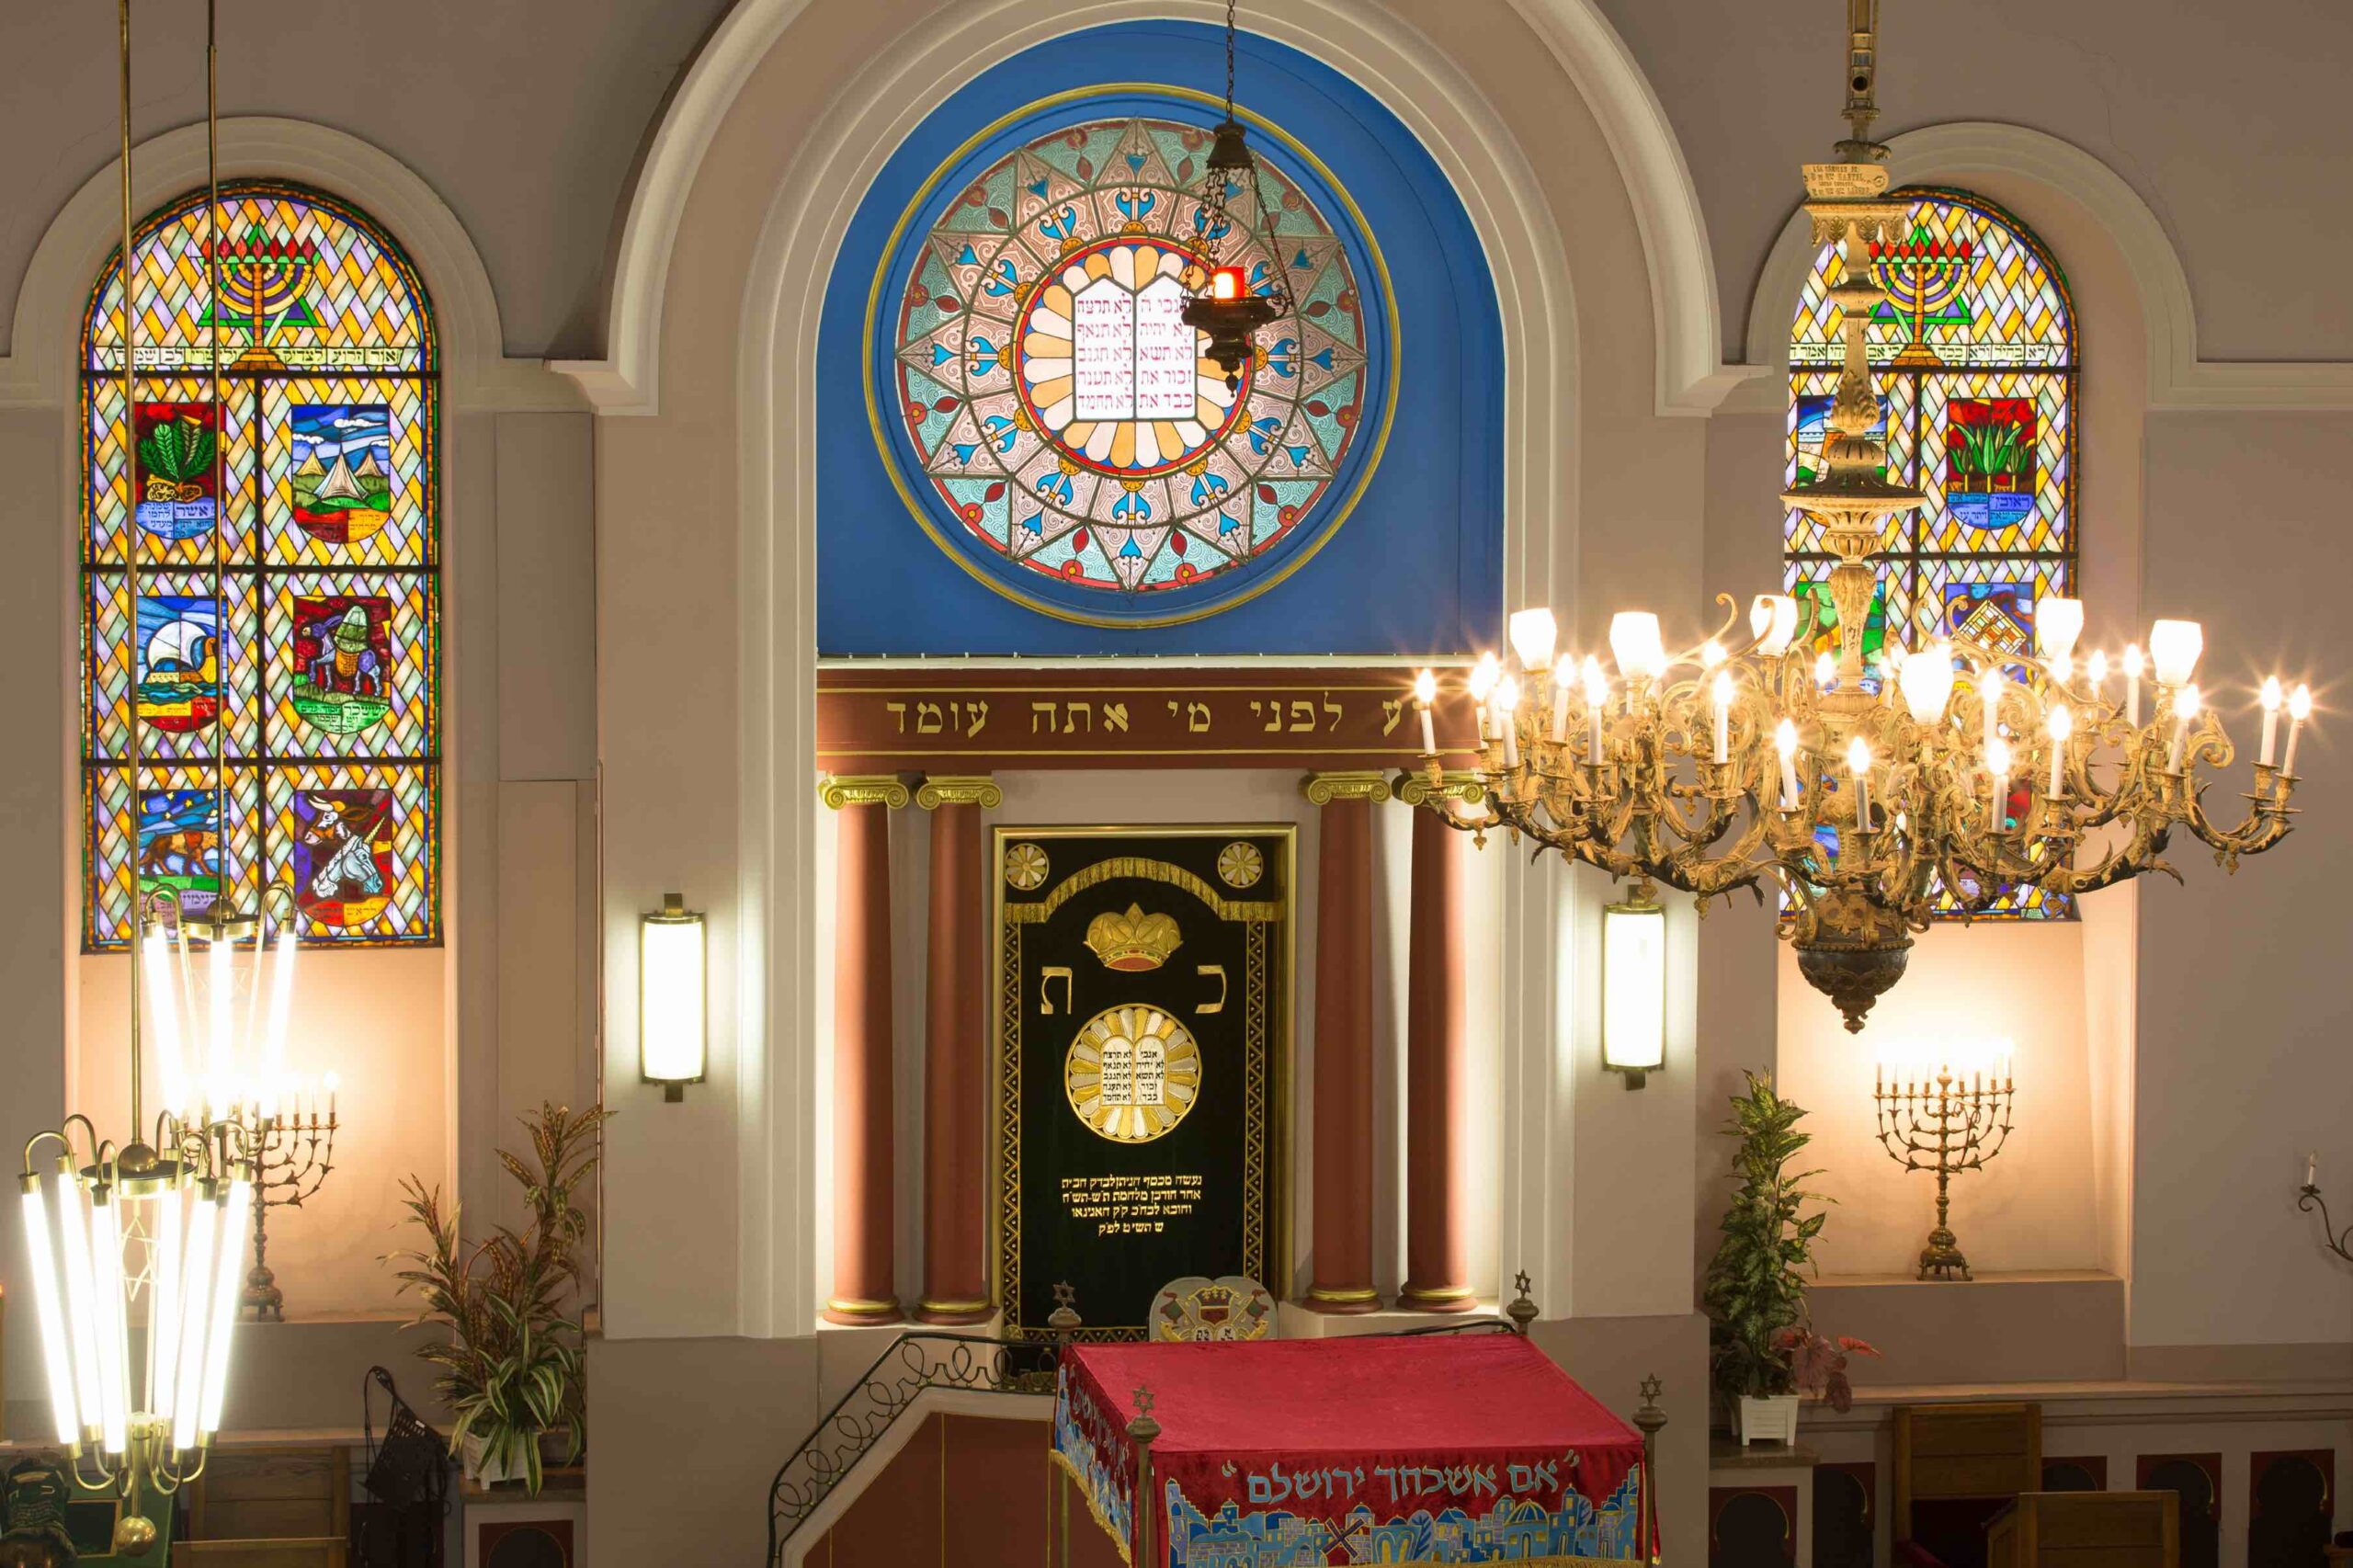 The Jewish Heritage of Haguenau